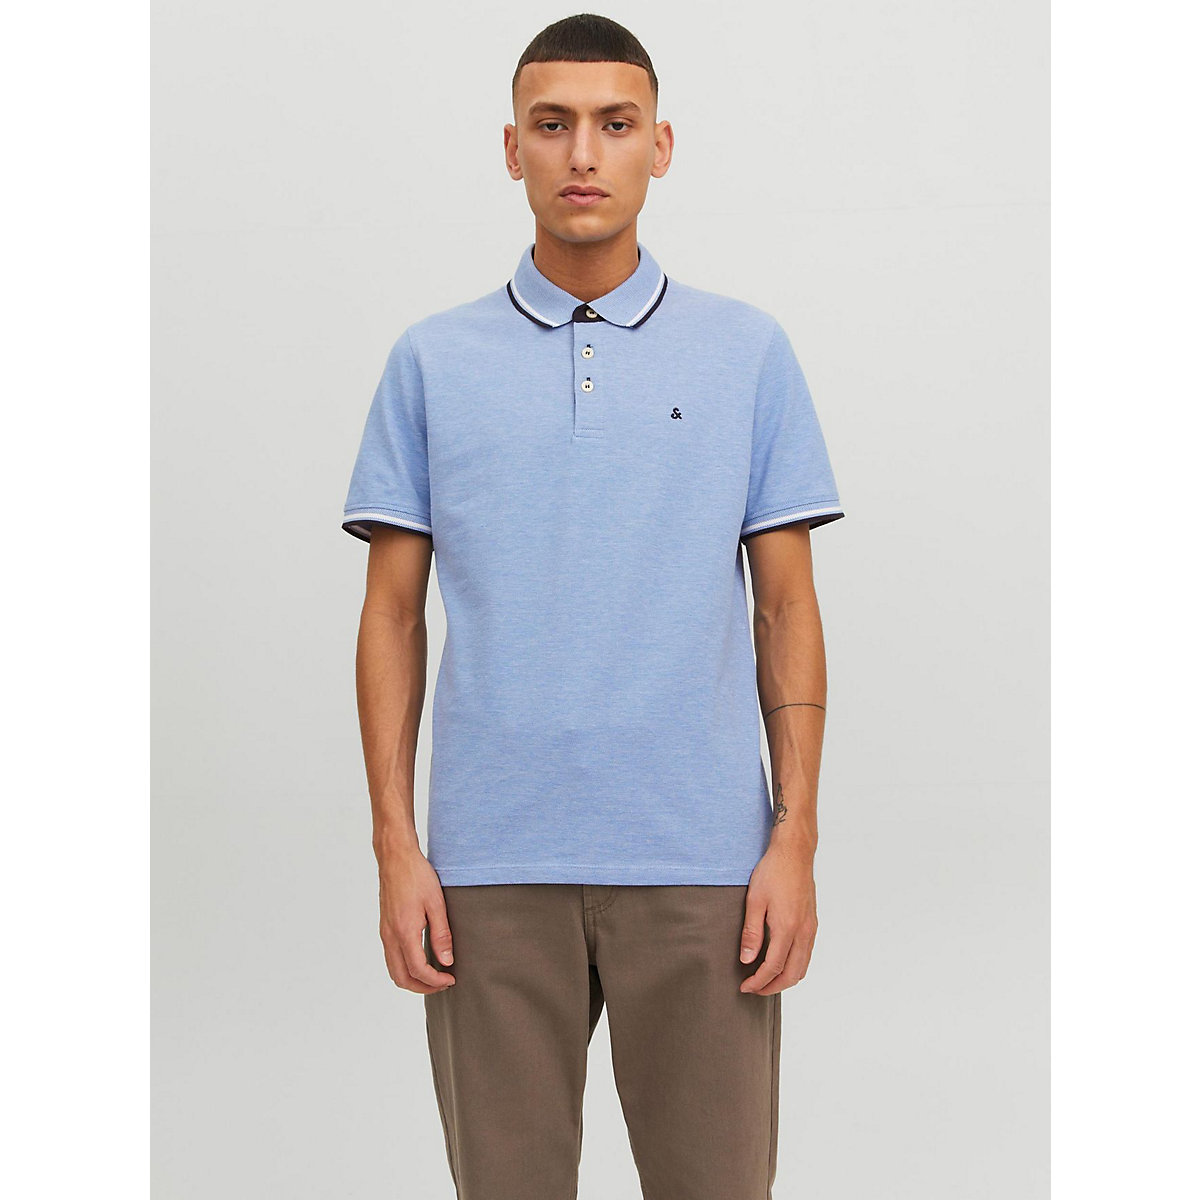 JACK & JONES Polo Shirt JJEPAULOS Sommer Hemd Kragen Pique Cotton blau Modell 2